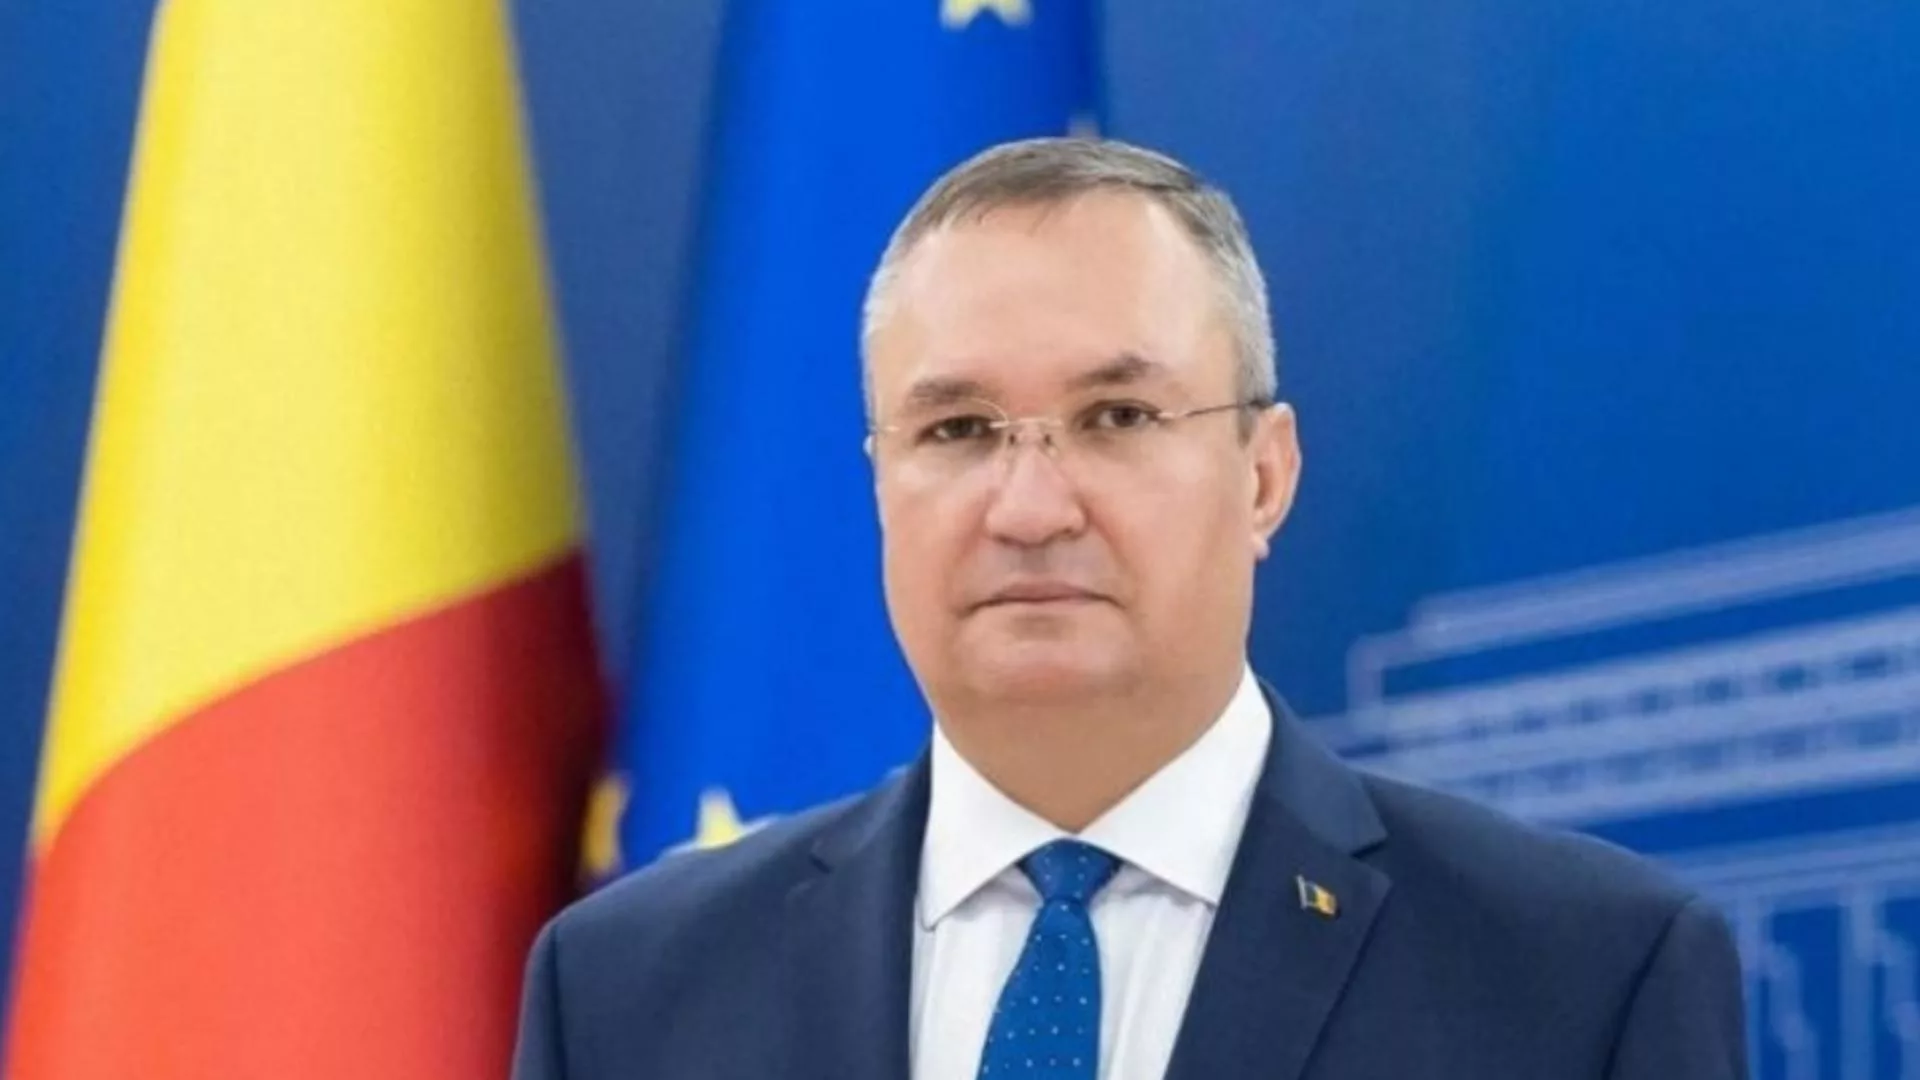 Nicolae Ciucă, hotărât: “Vreau să fim în continuare un partener foarte serios în coaliţia guvernamentală”